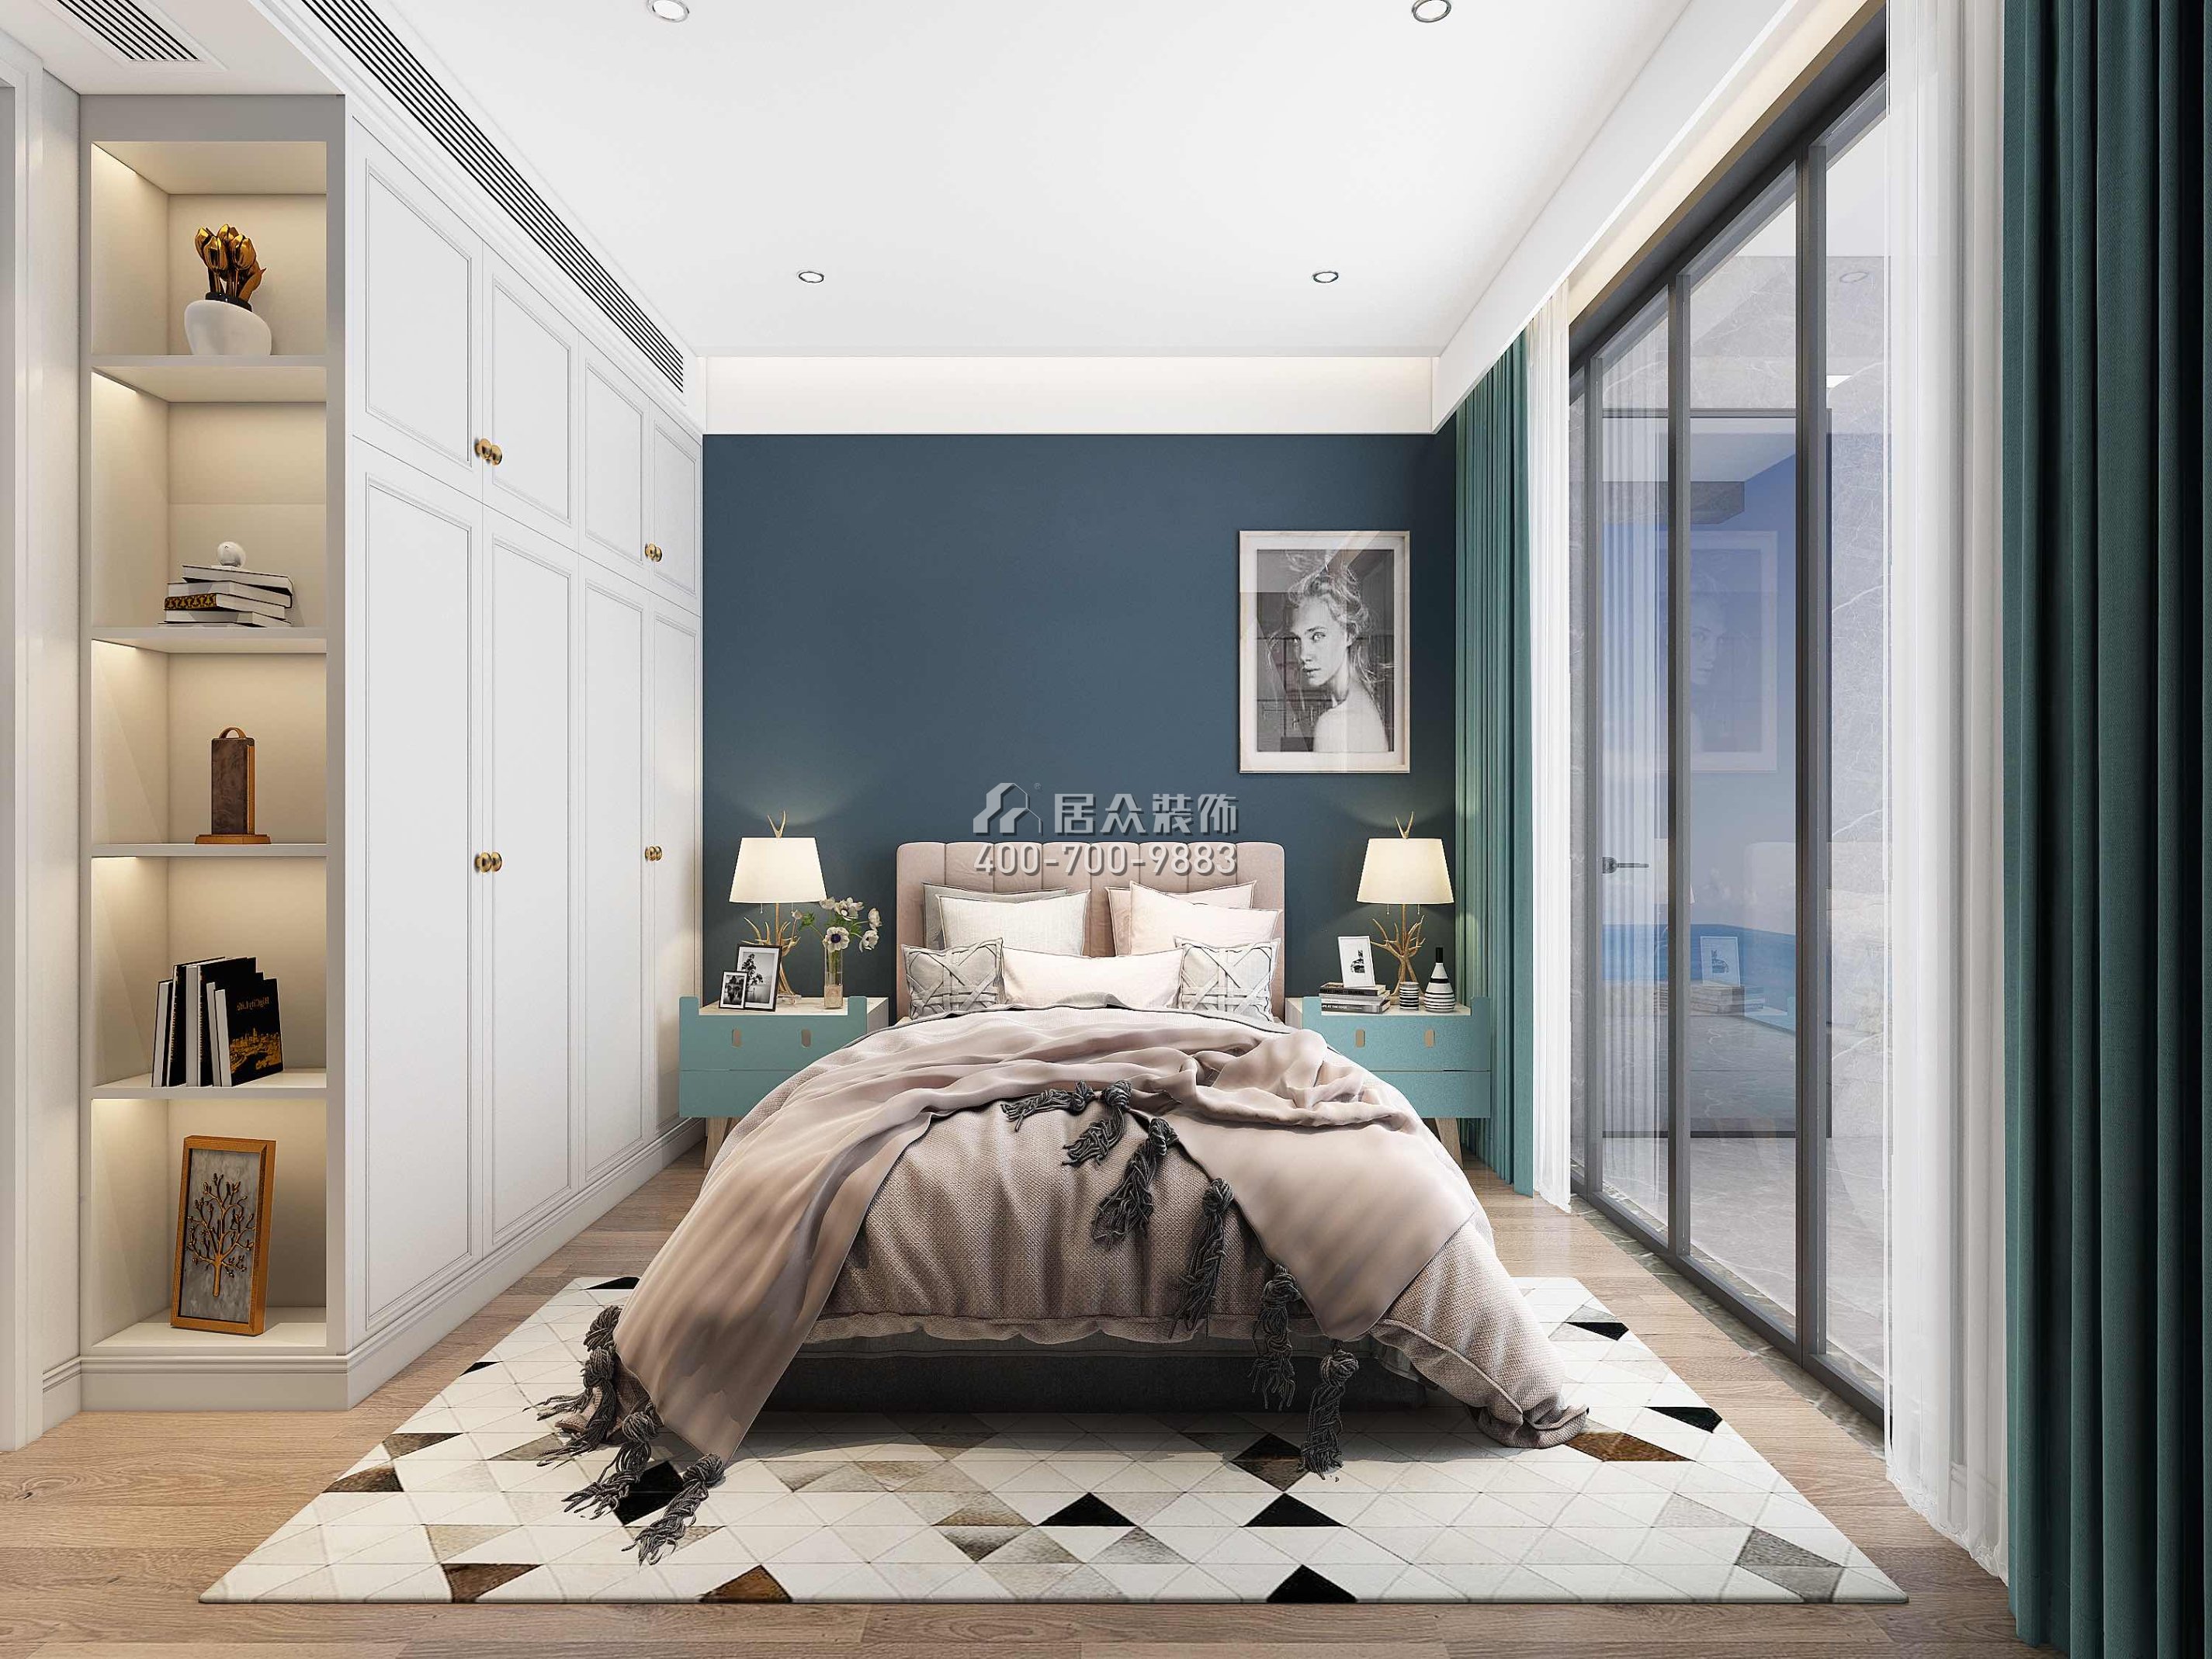 香山美墅五期170平方米現代簡約風格平層戶型臥室裝修效果圖